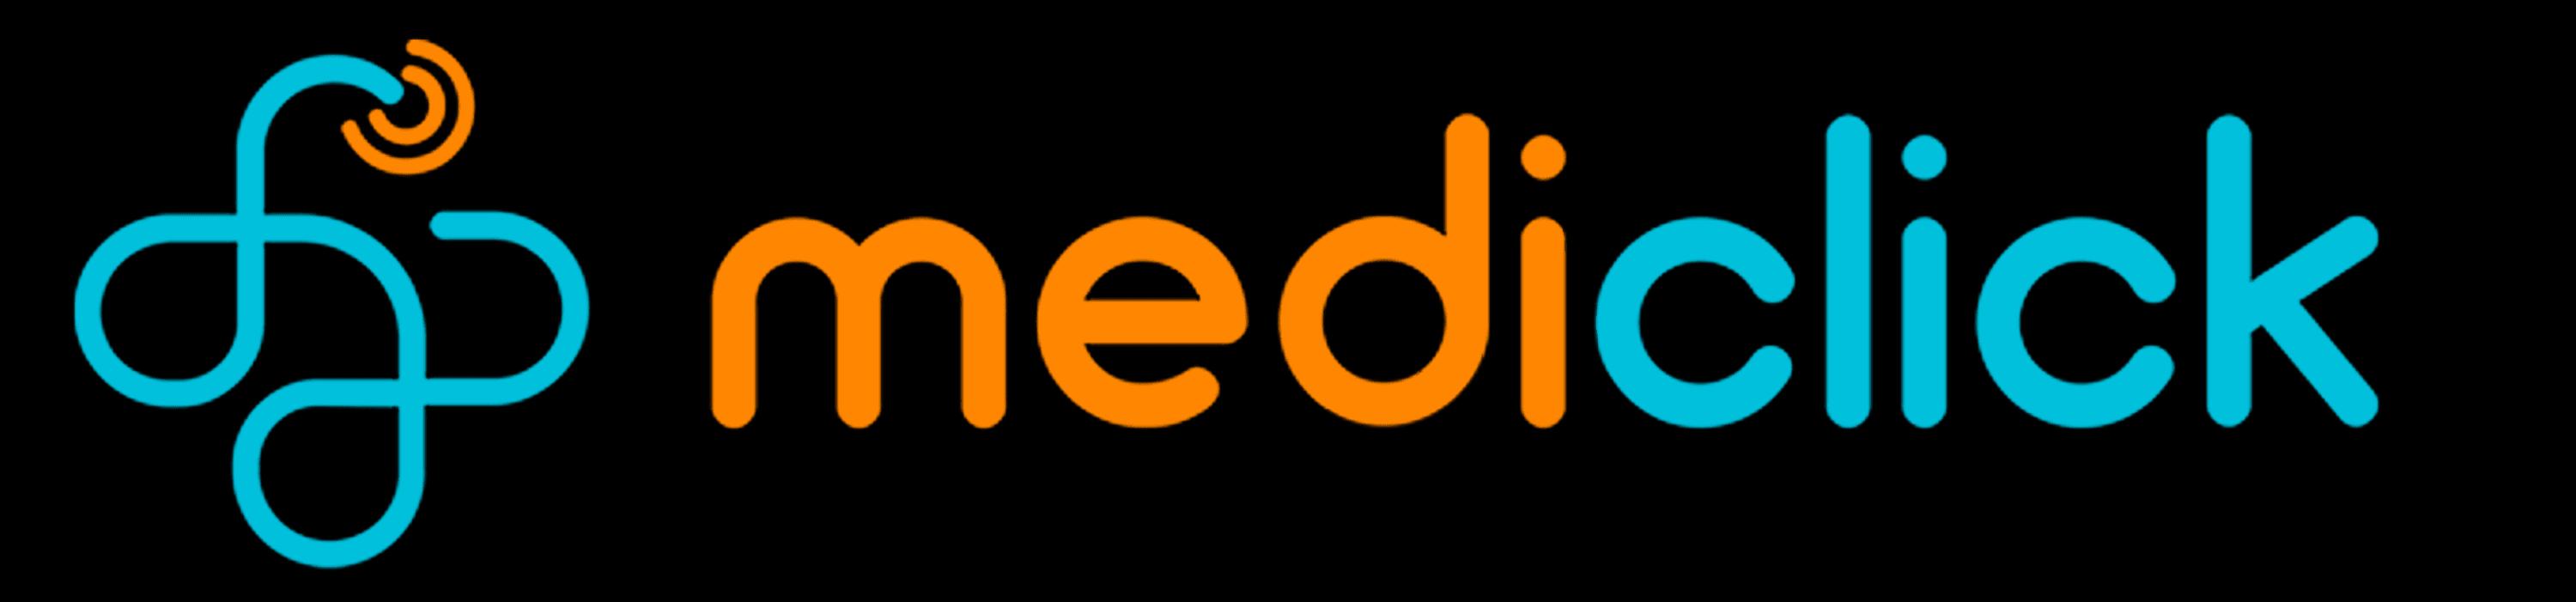 Mediclick_logo